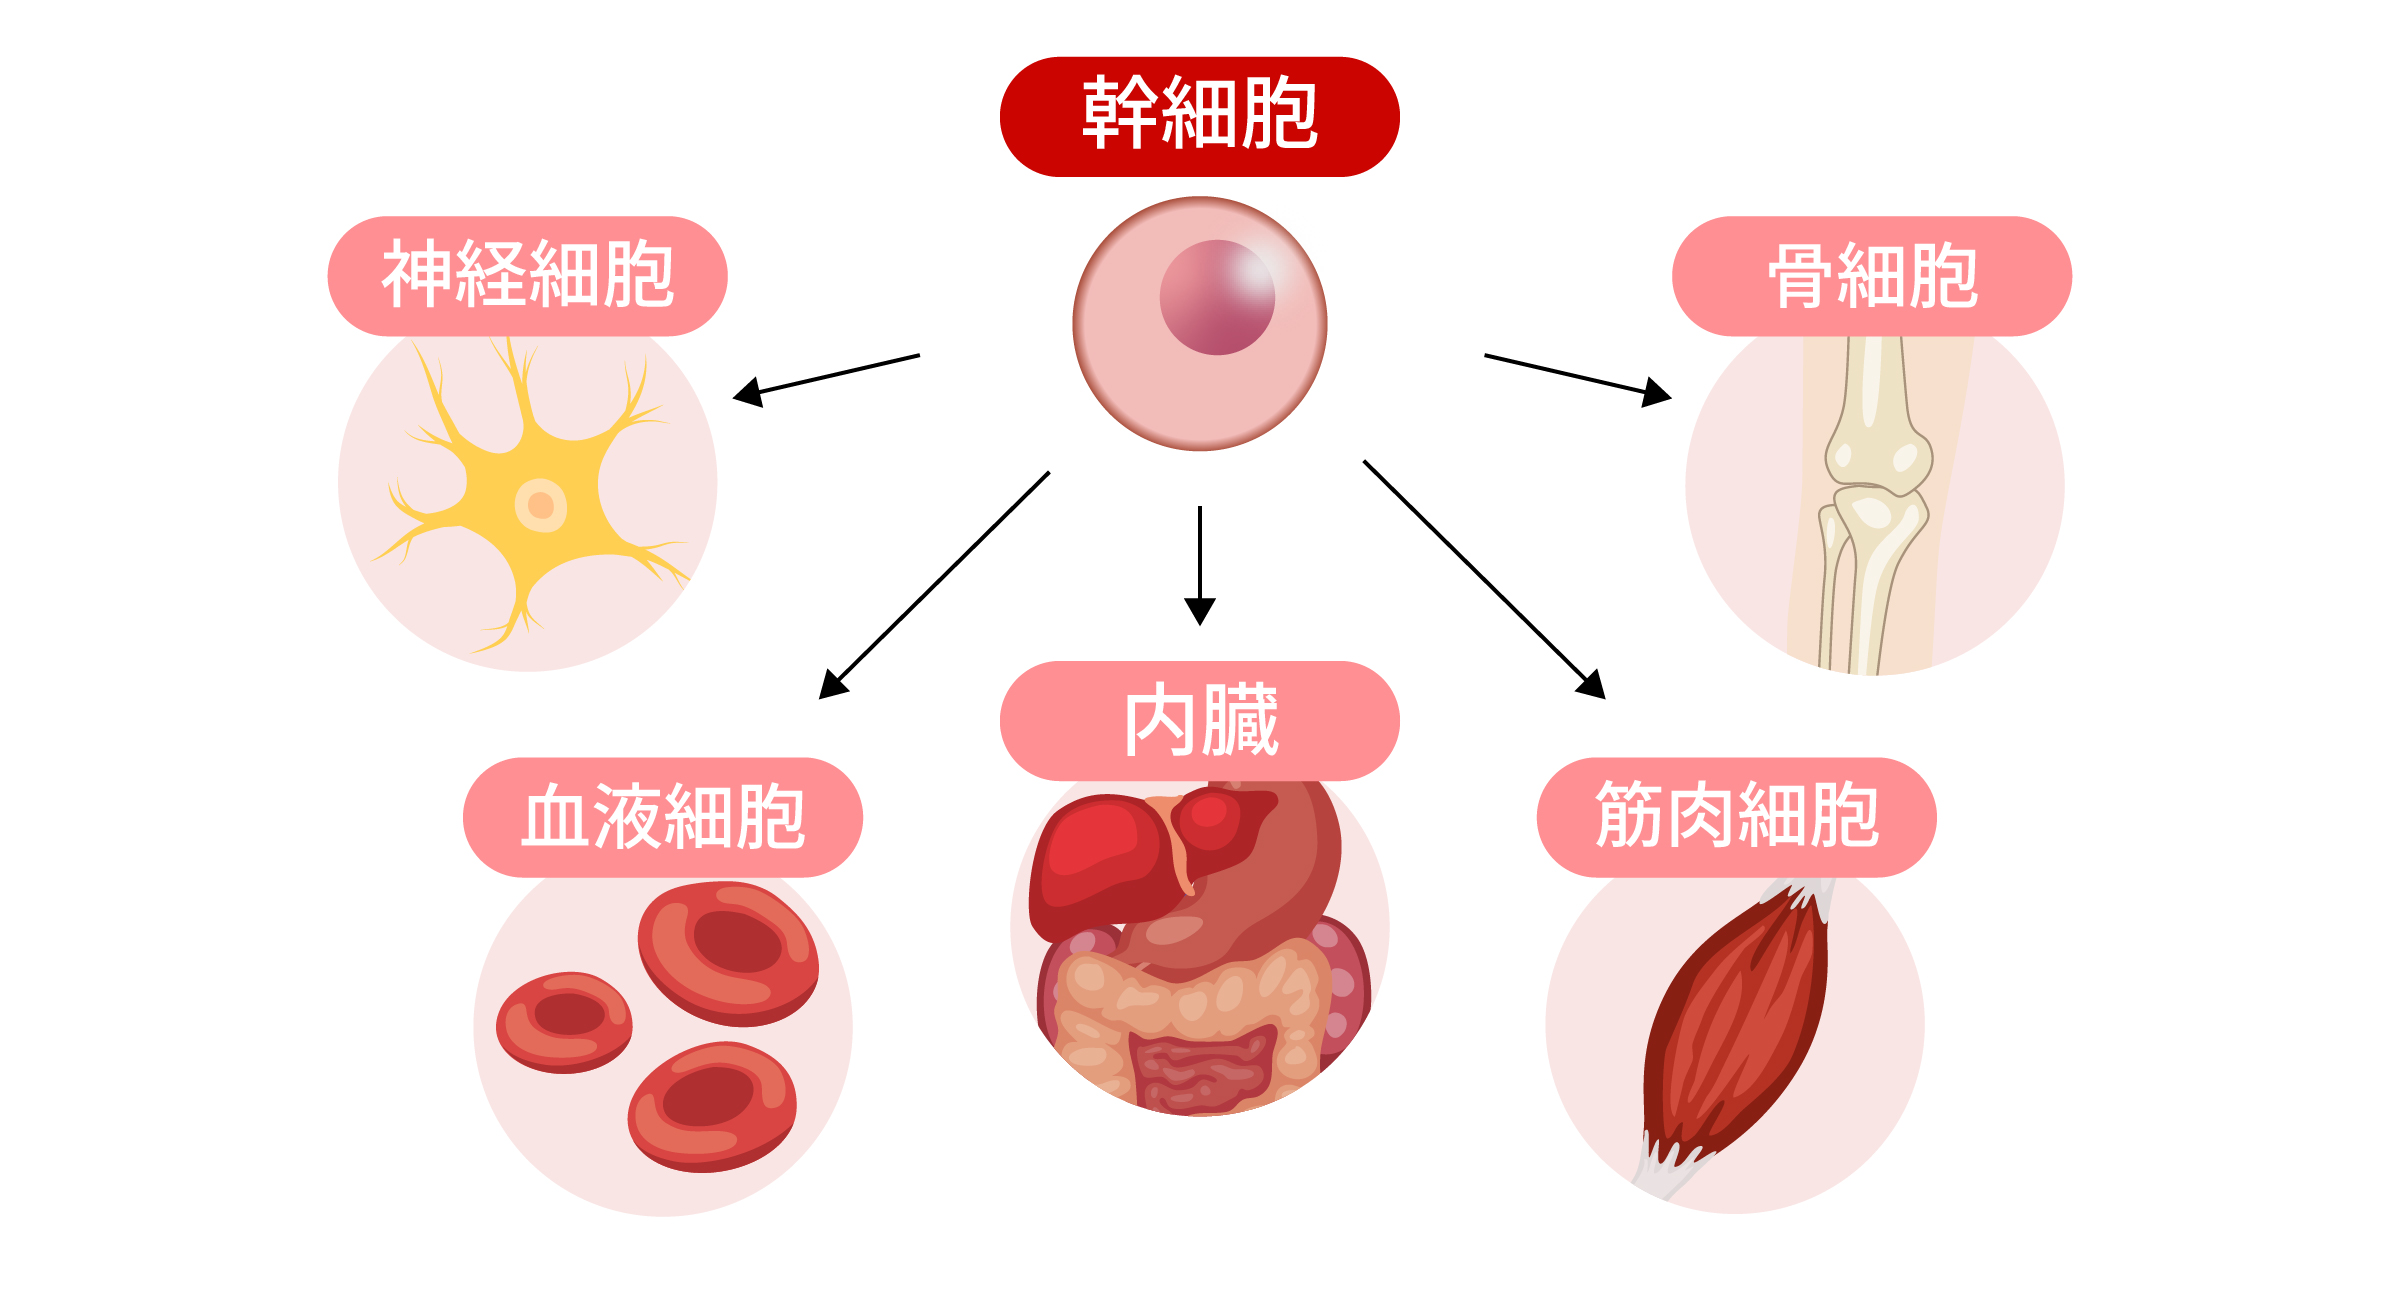 再生医療(身体)の幹細胞の説明画像